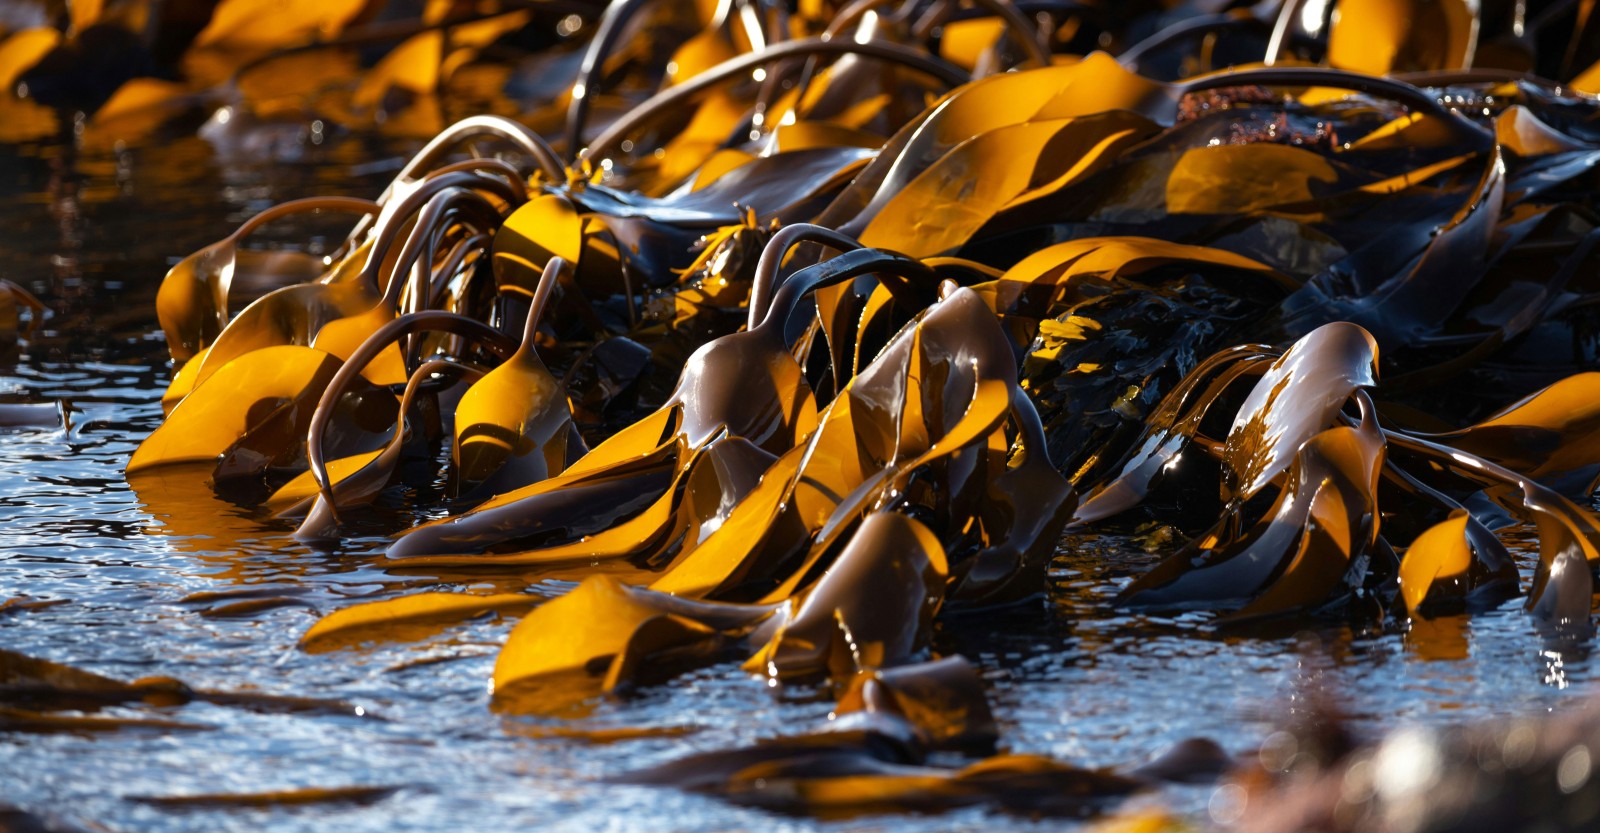 Seaweed by water